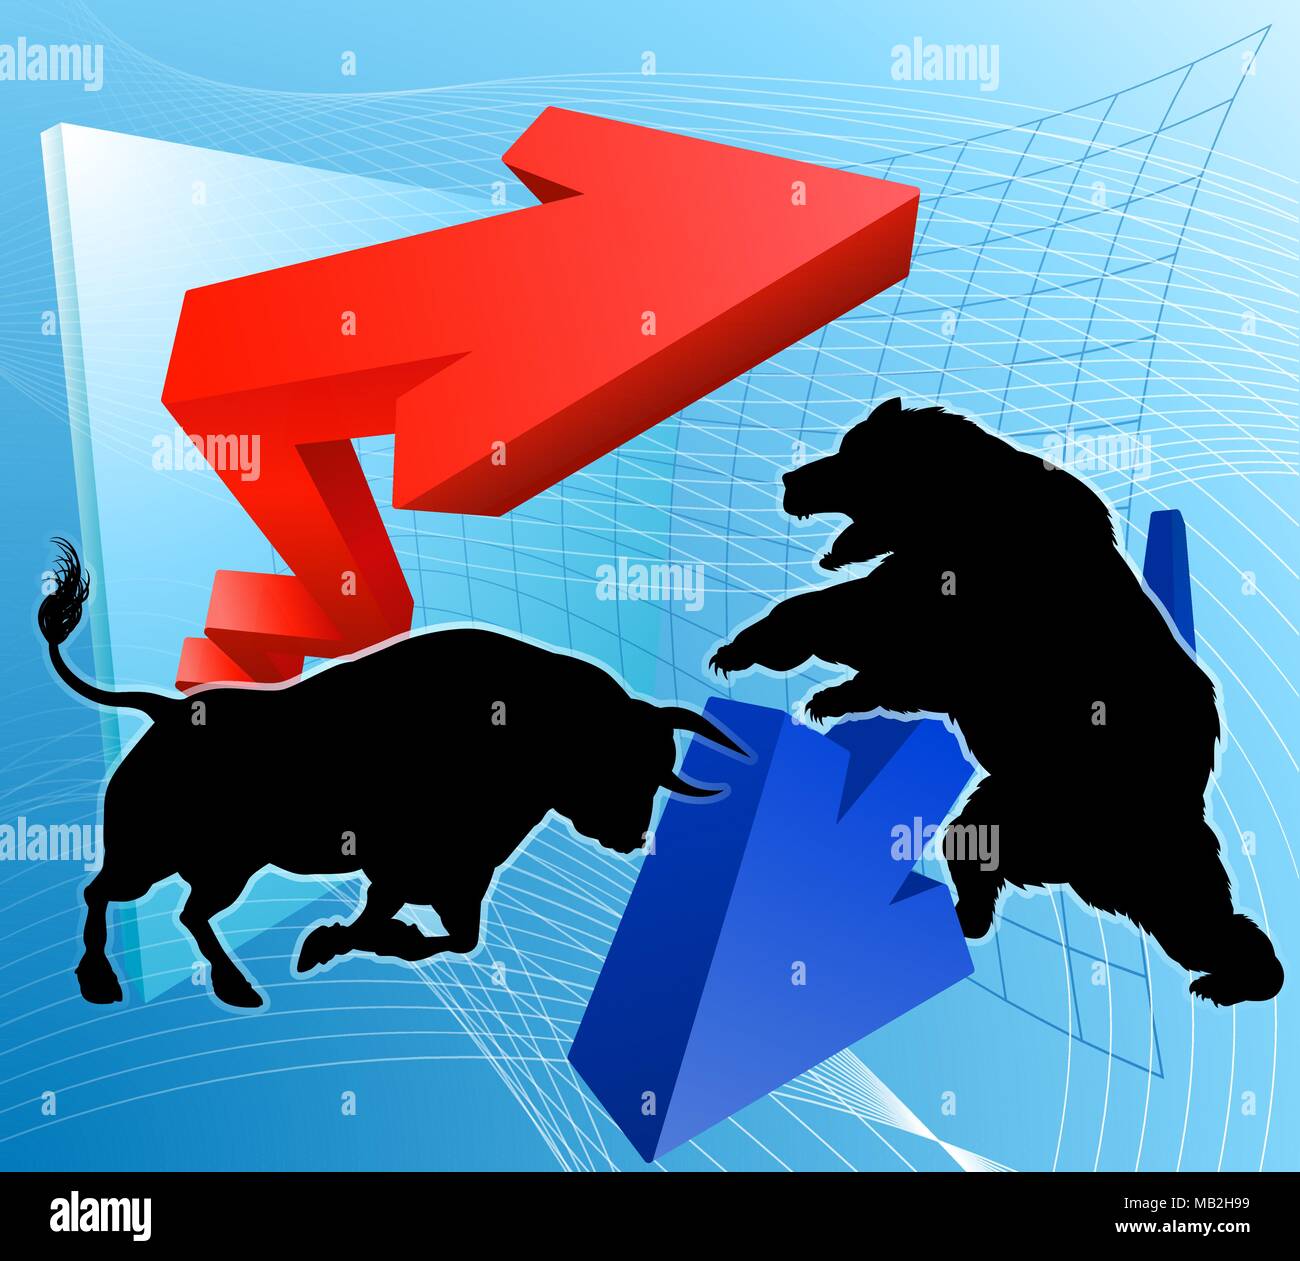 Bears Versus Bulls Stock Market Concept Stock Vector